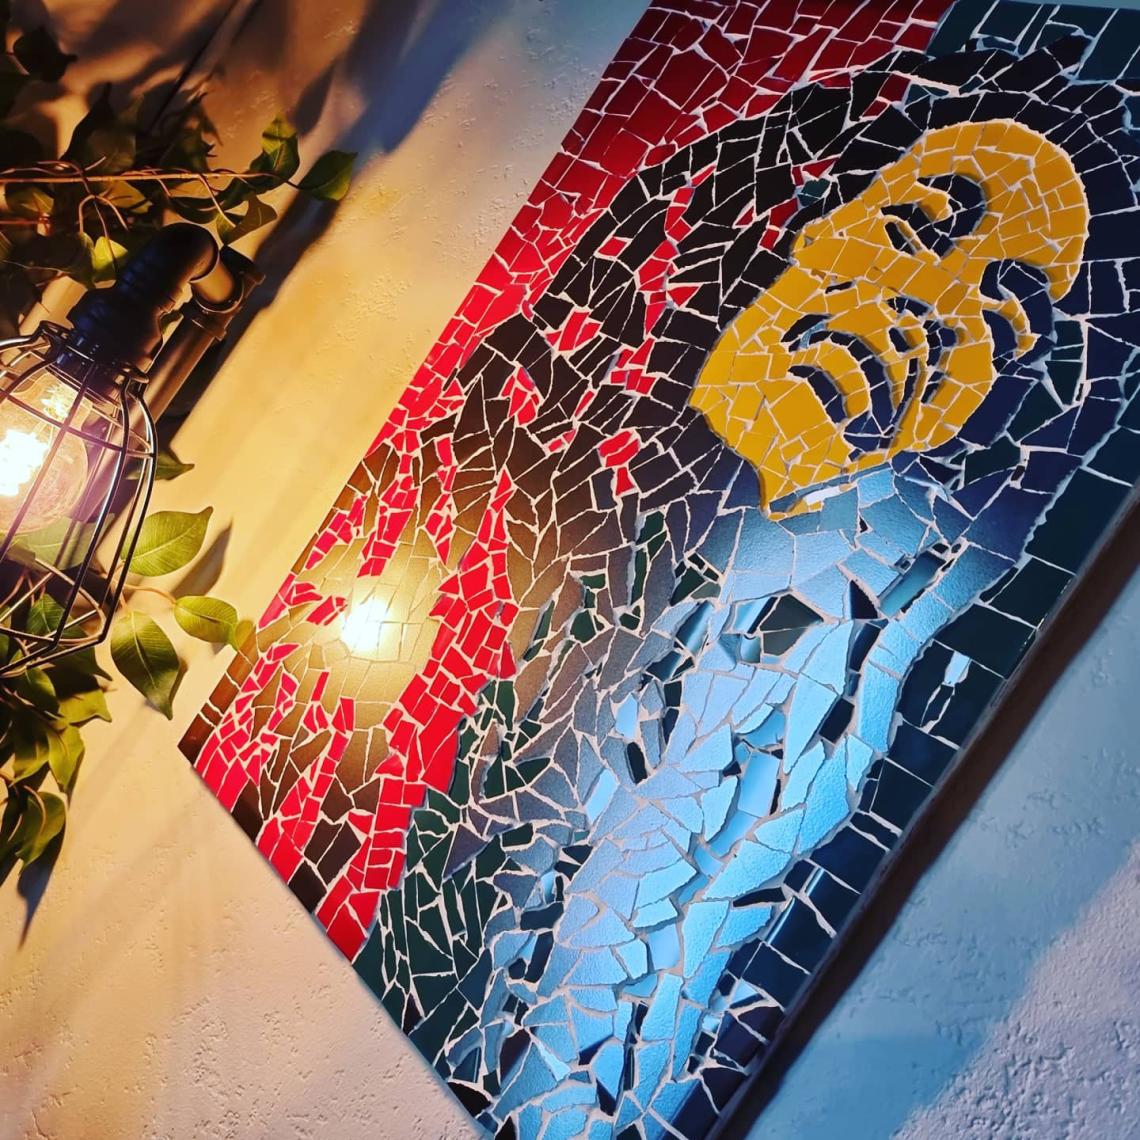 Bob Marley mosaic on a wall.